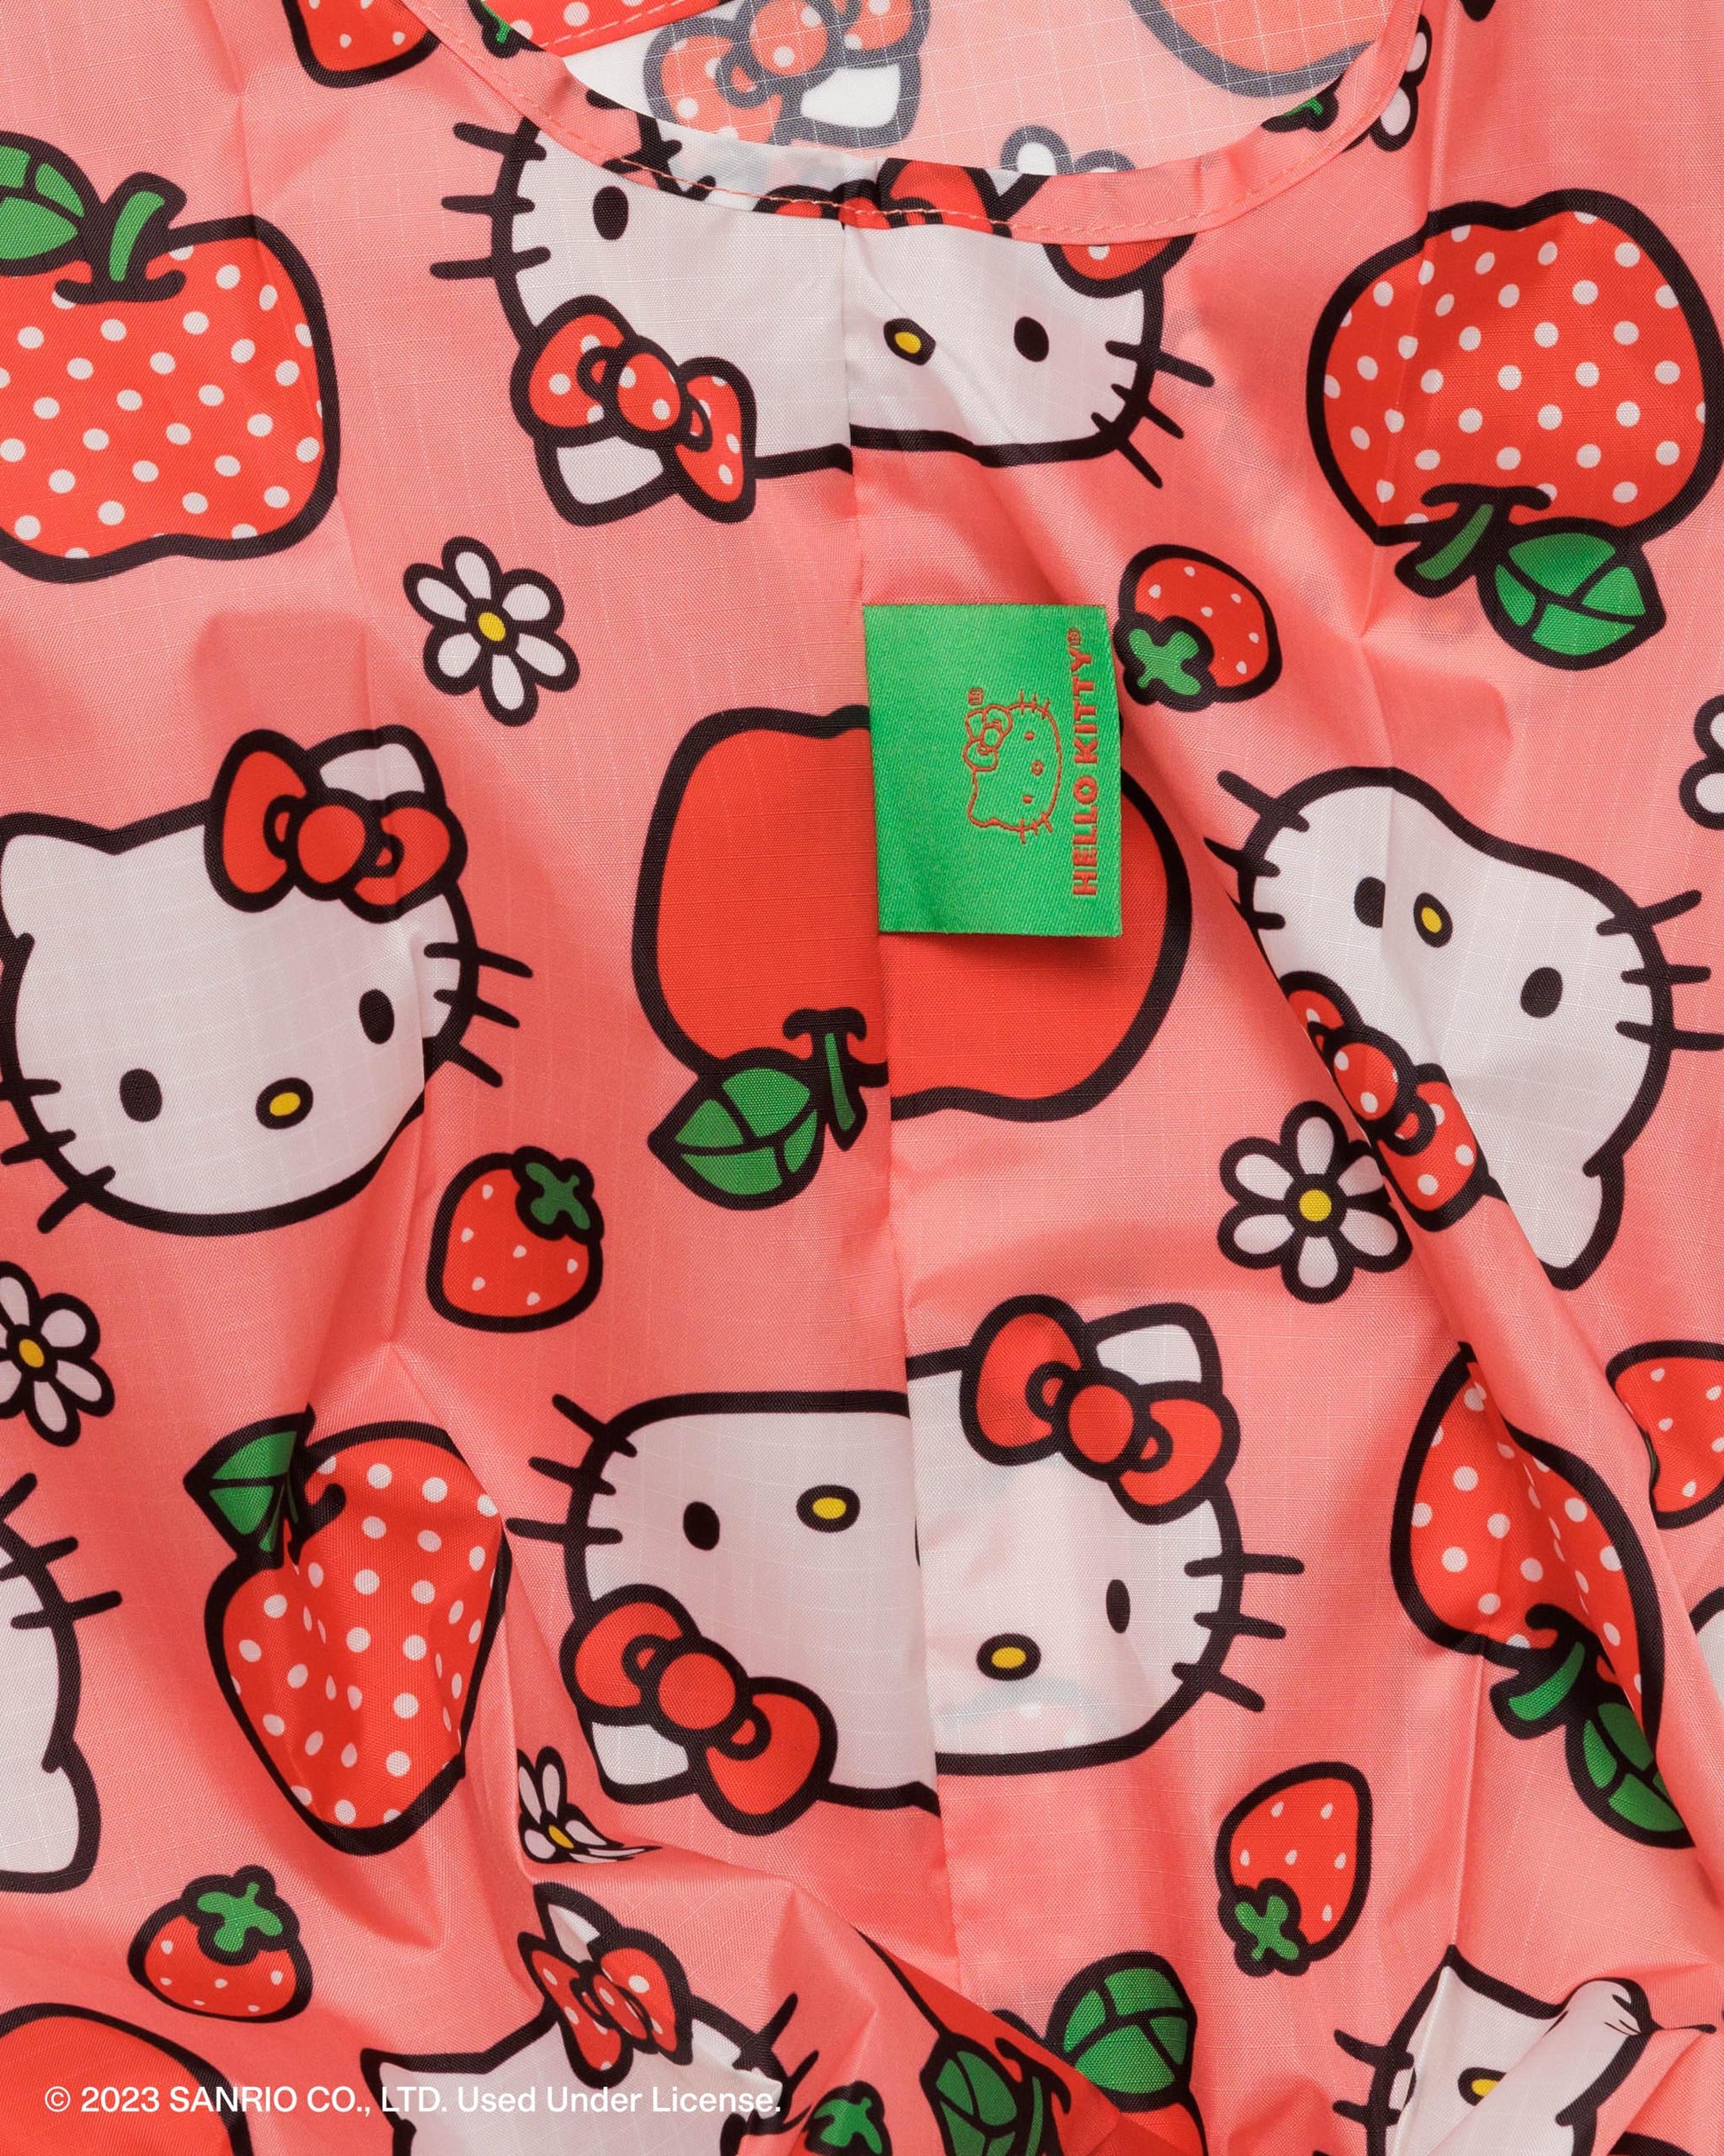 BAGGU x Sanrio Standard BAGGU - Hello Kitty Apple | RALLY RALLY Singapore